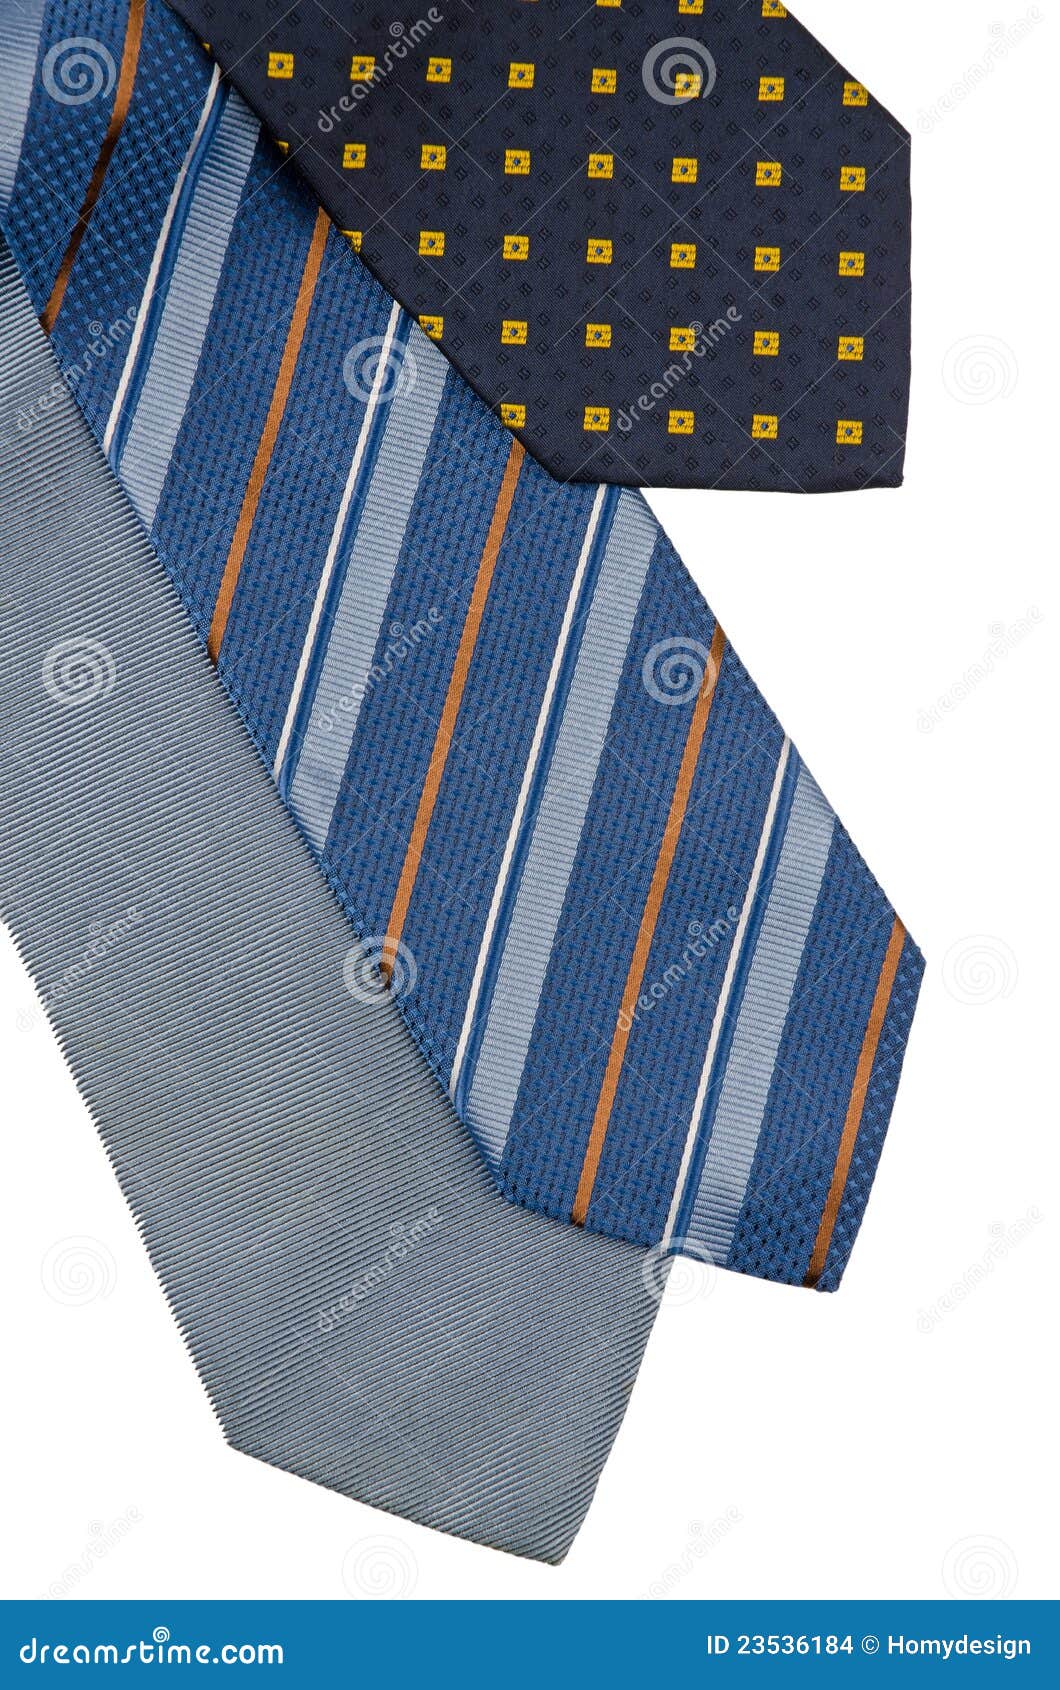 Closeup of three ties stock photo. Image of necktie, luxury - 23536184